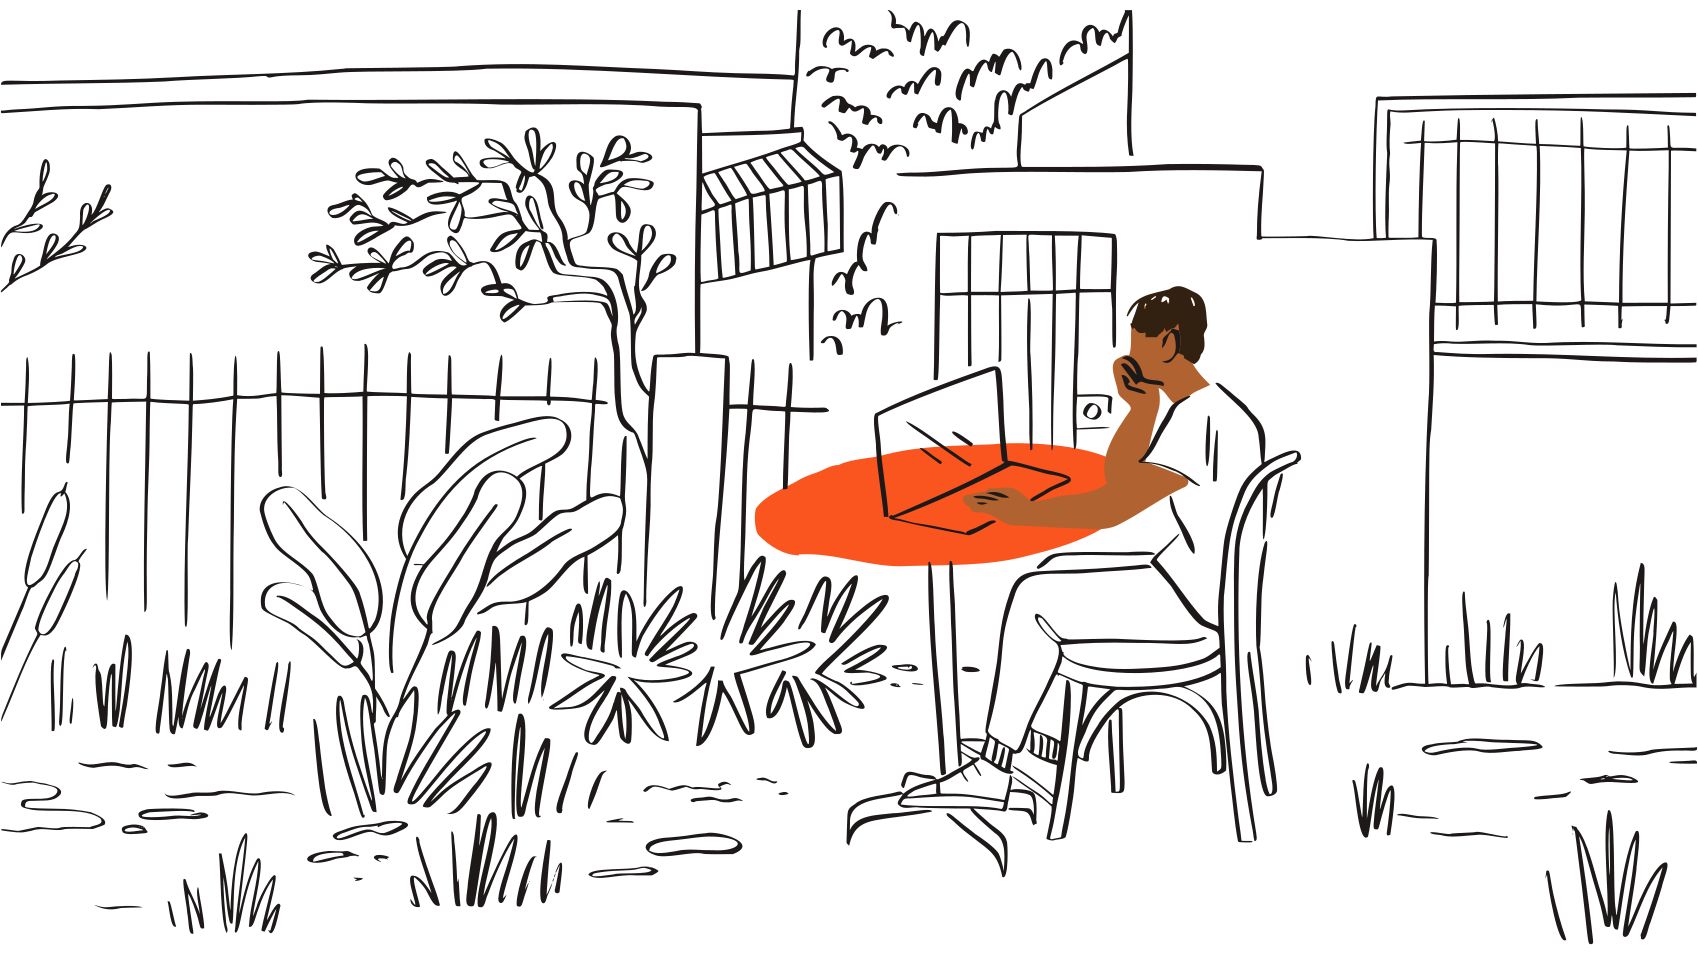 Ilustracja przedstawiająca osobę siedzącą przy pomarańczowym stole i patrzącą na laptop